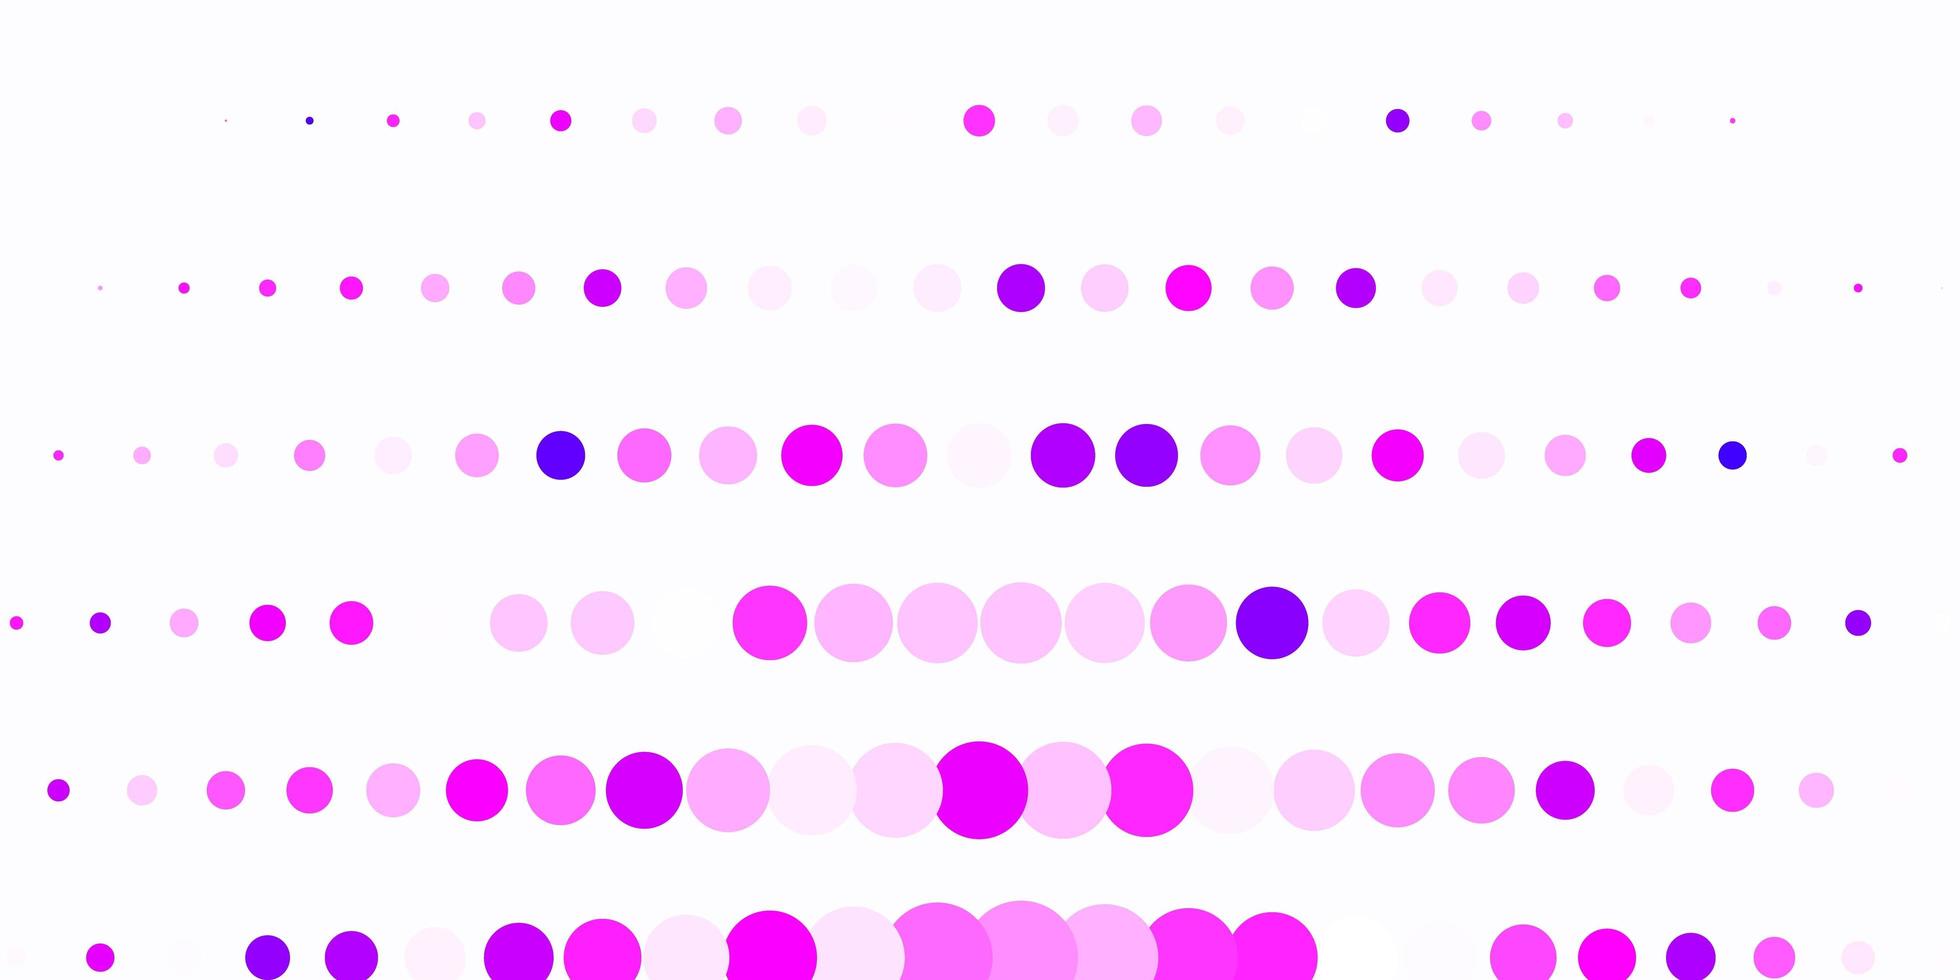 diseño de vector rosa claro con círculos.